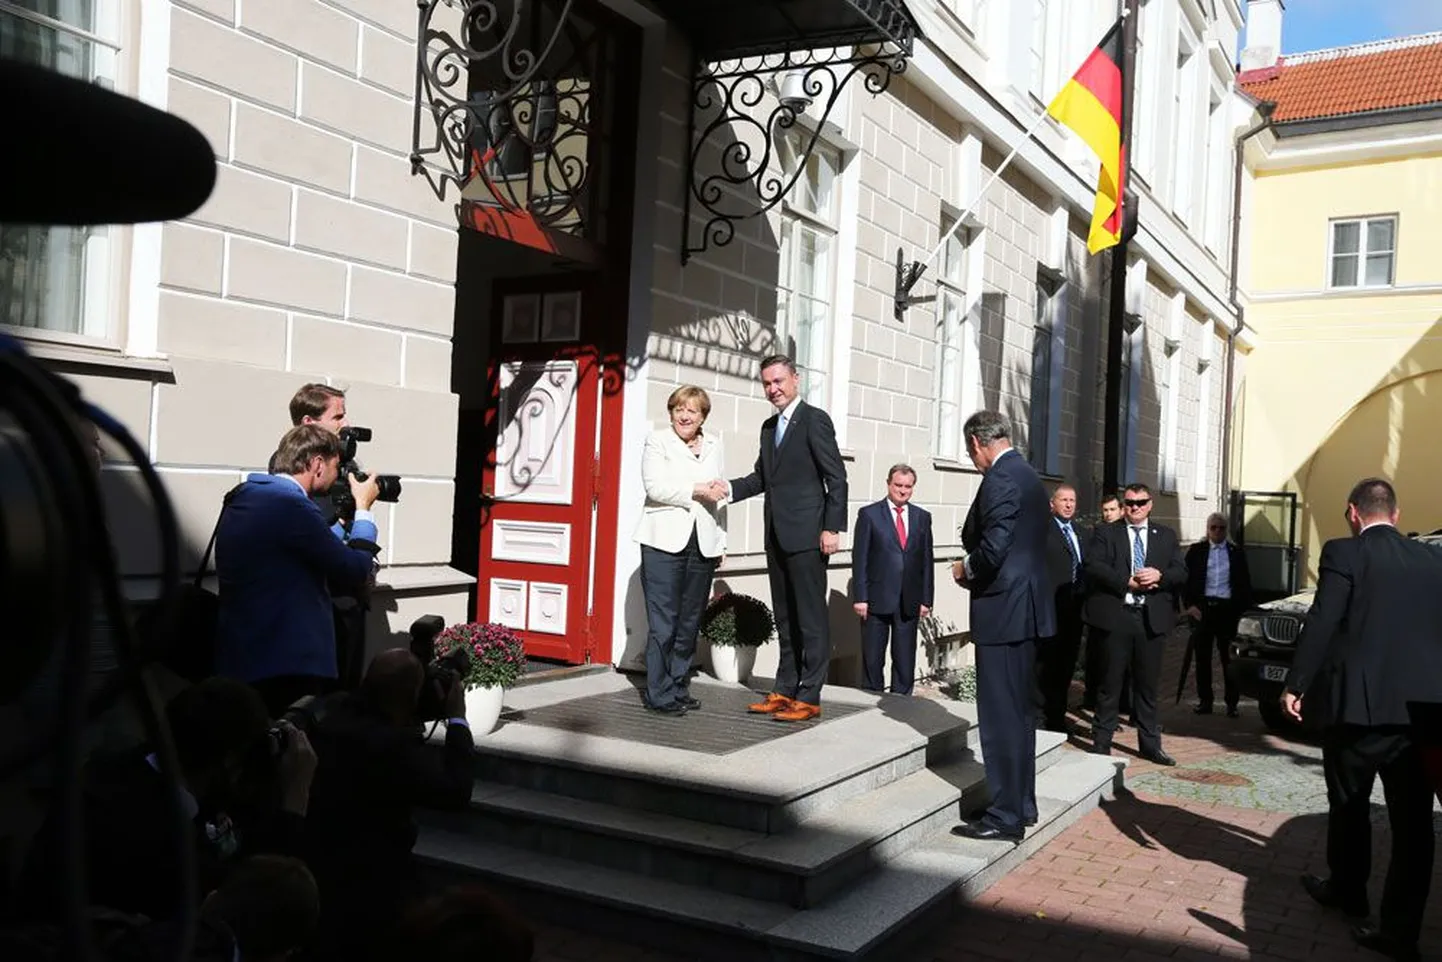 Вчера канцлер Германии Ангела Меркель на совместной пресс-конференции с премьер-министром ЭР Таави Рыйвасом в Доме Сненбока отметила вклад Эстонии в развитие Евросоюза. Однако не все были рады ее визиту: активисты EKRE организовали пикет против политики Меркель в отношении беженцев.